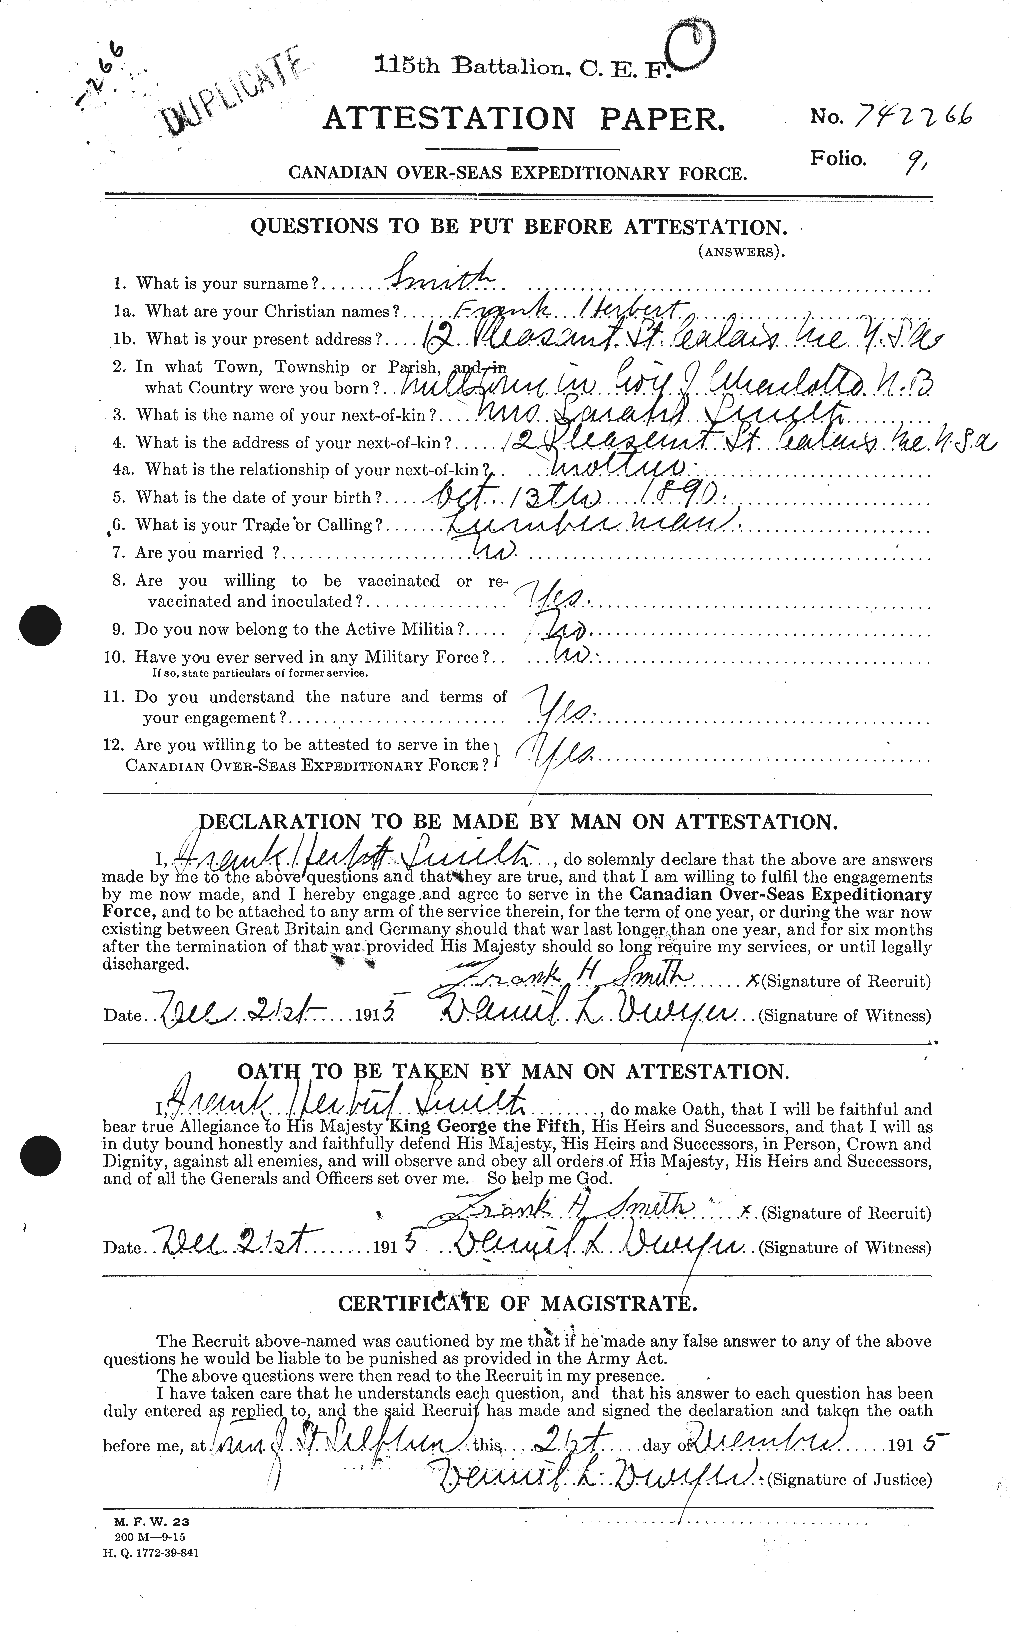 Dossiers du Personnel de la Première Guerre mondiale - CEC 106763a